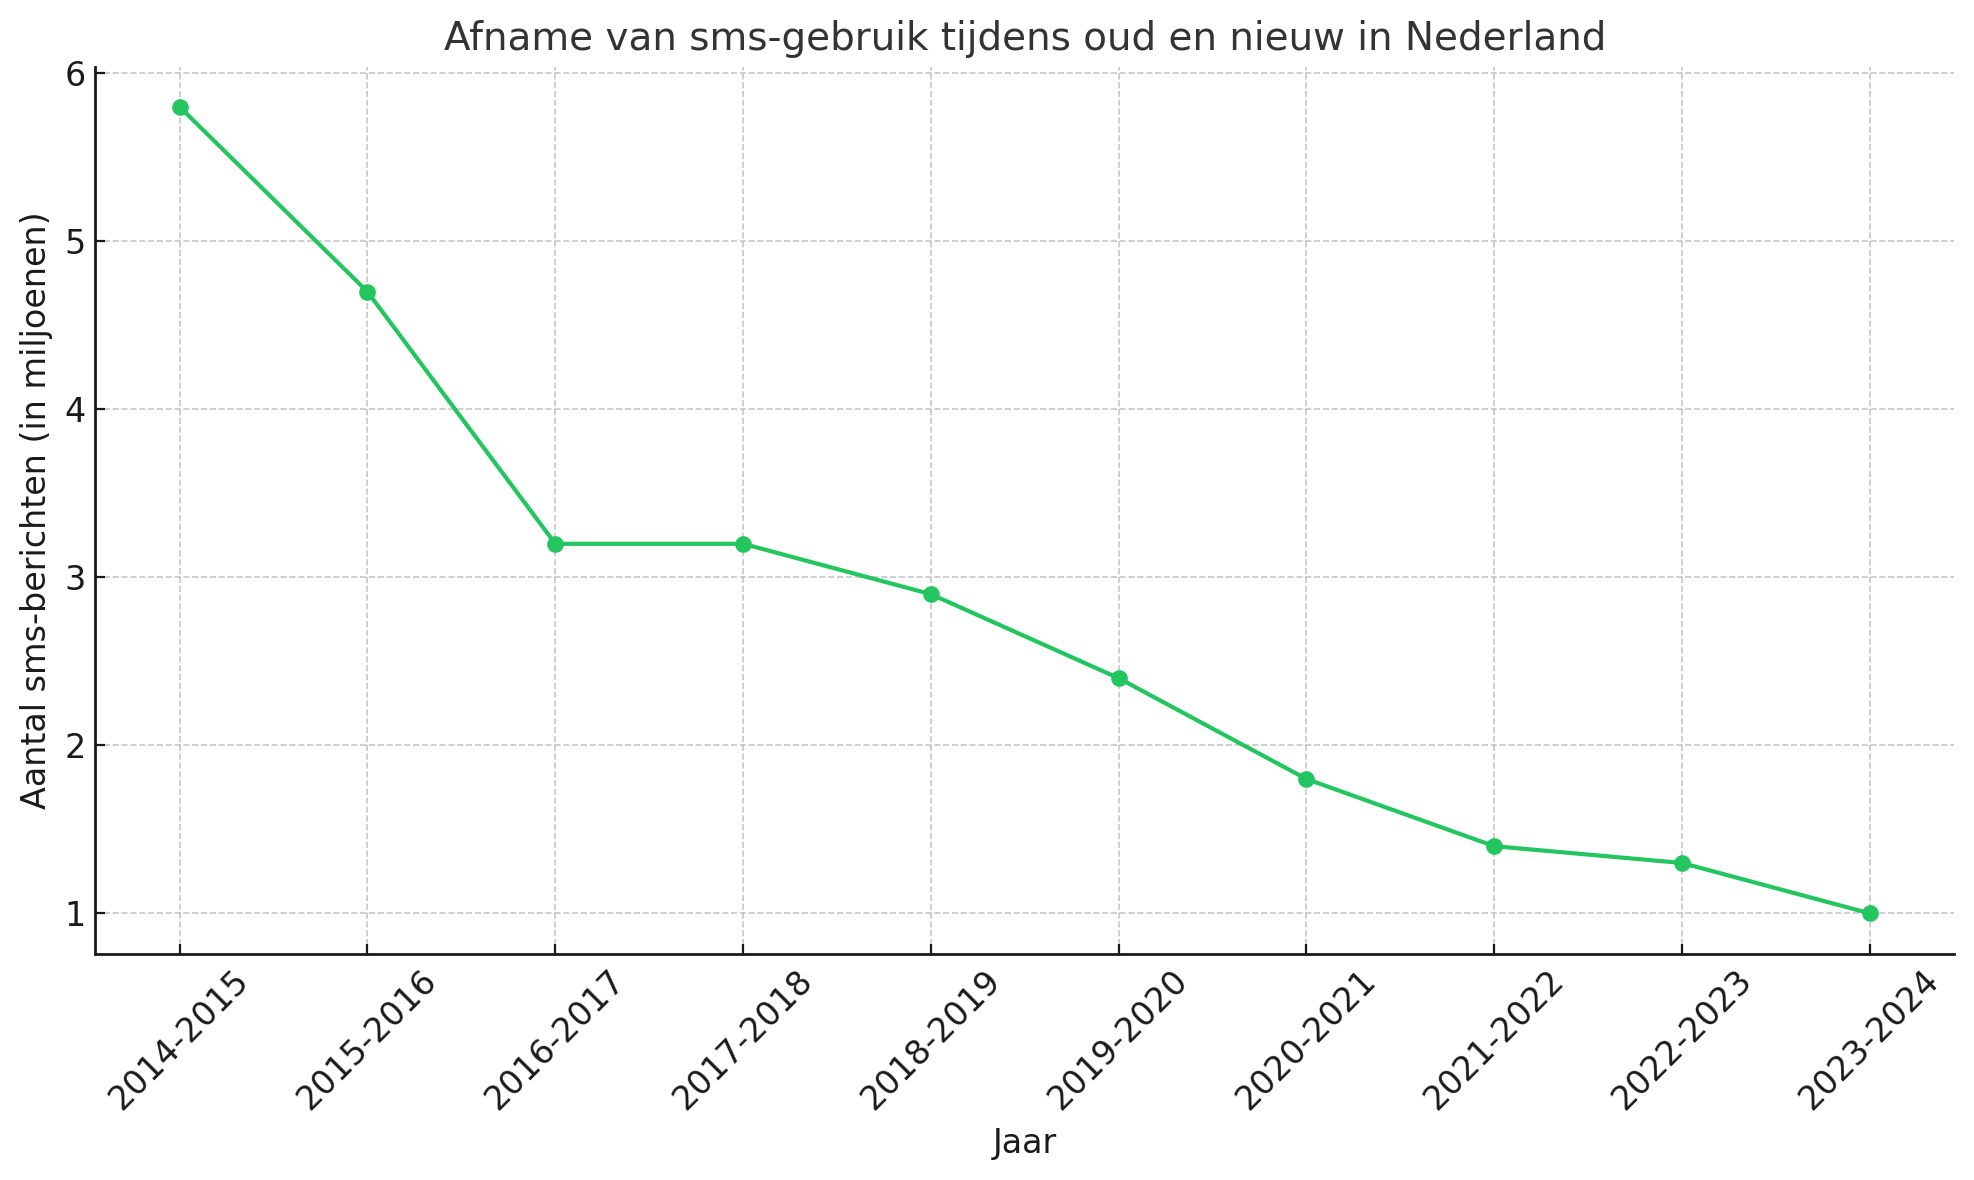 Afname van sms-gebruik tijdens oud en nieuw in Nederland